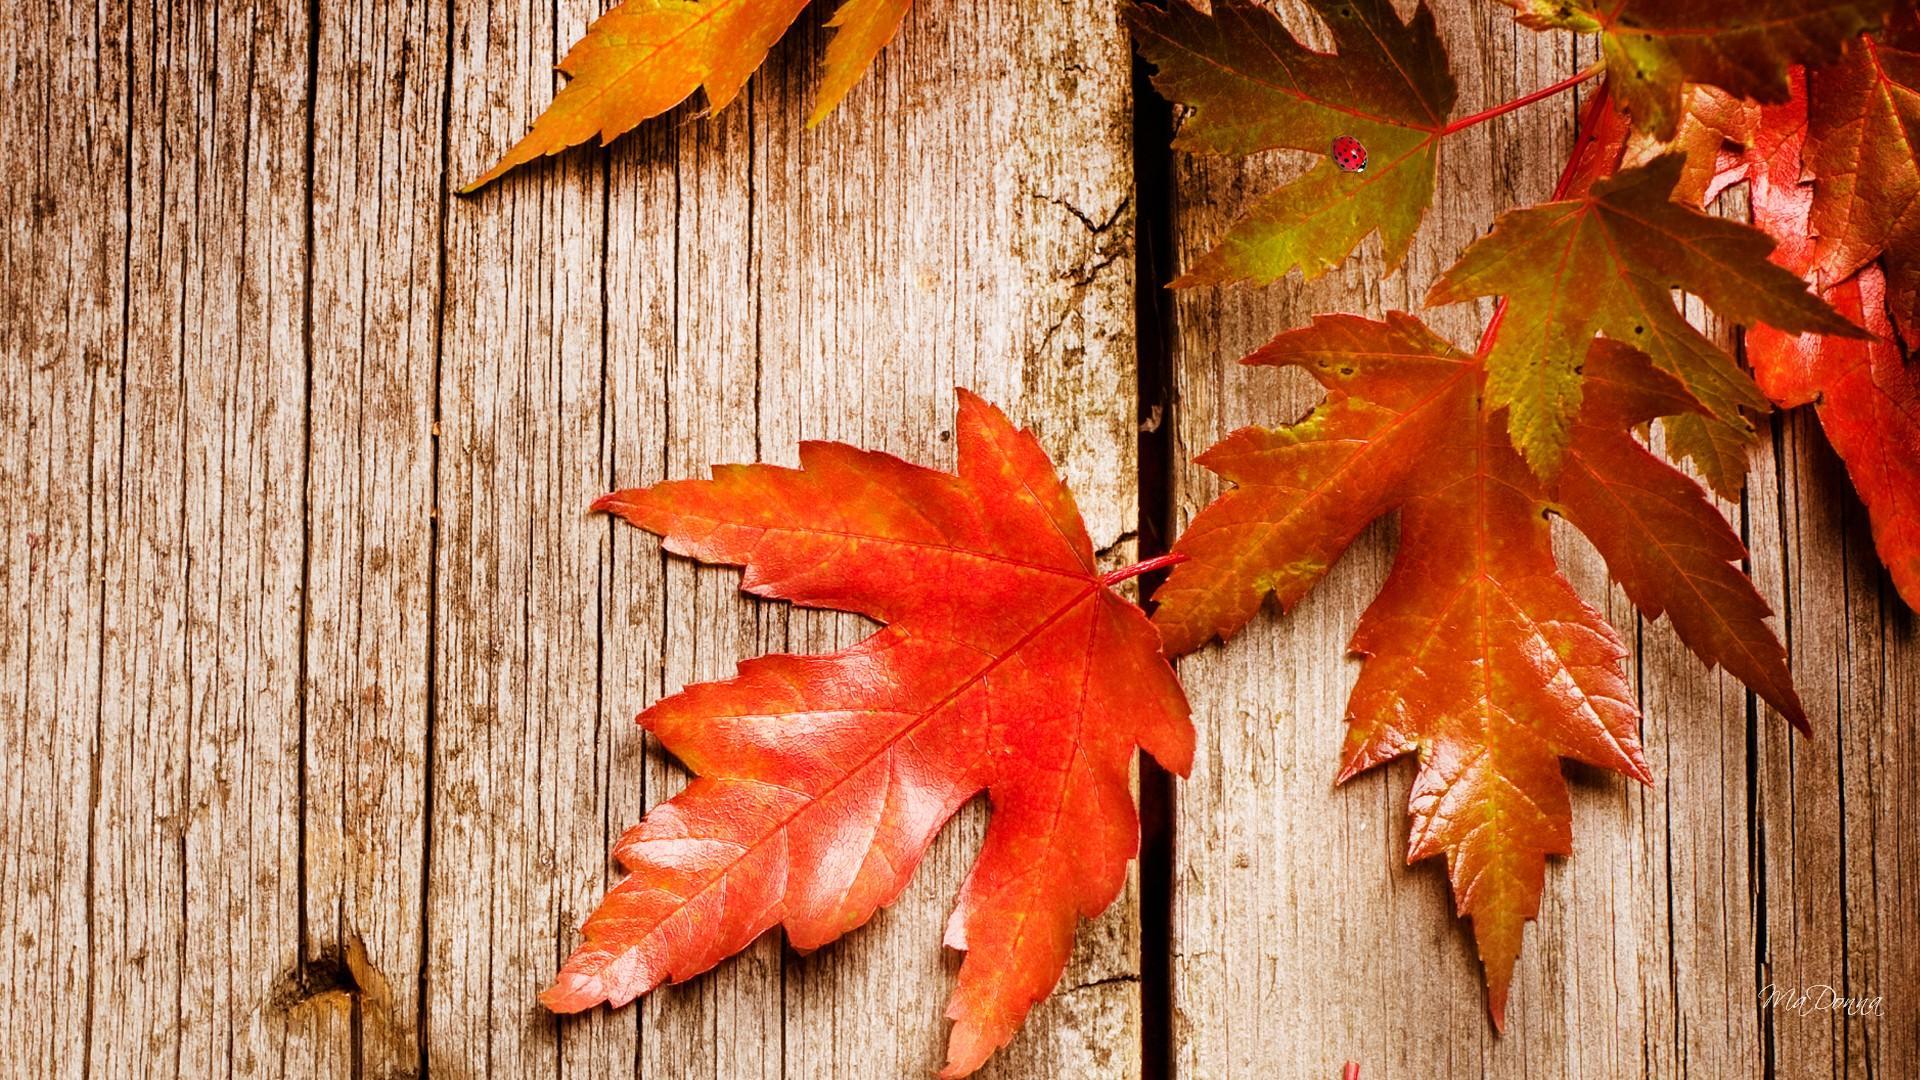 Mùa Thu (Autumn): Mùa thu với những lá rụng đỏ rực rỡ, những cơn gió mát lành và những bức ảnh tuyệt đẹp sẽ đưa bạn vào không gian trầm lắng và yên tĩnh. Cùng ngắm nhìn những hình ảnh đầy sắc màu và tìm lại những cảm giác của mùa thu trong tâm hồn.